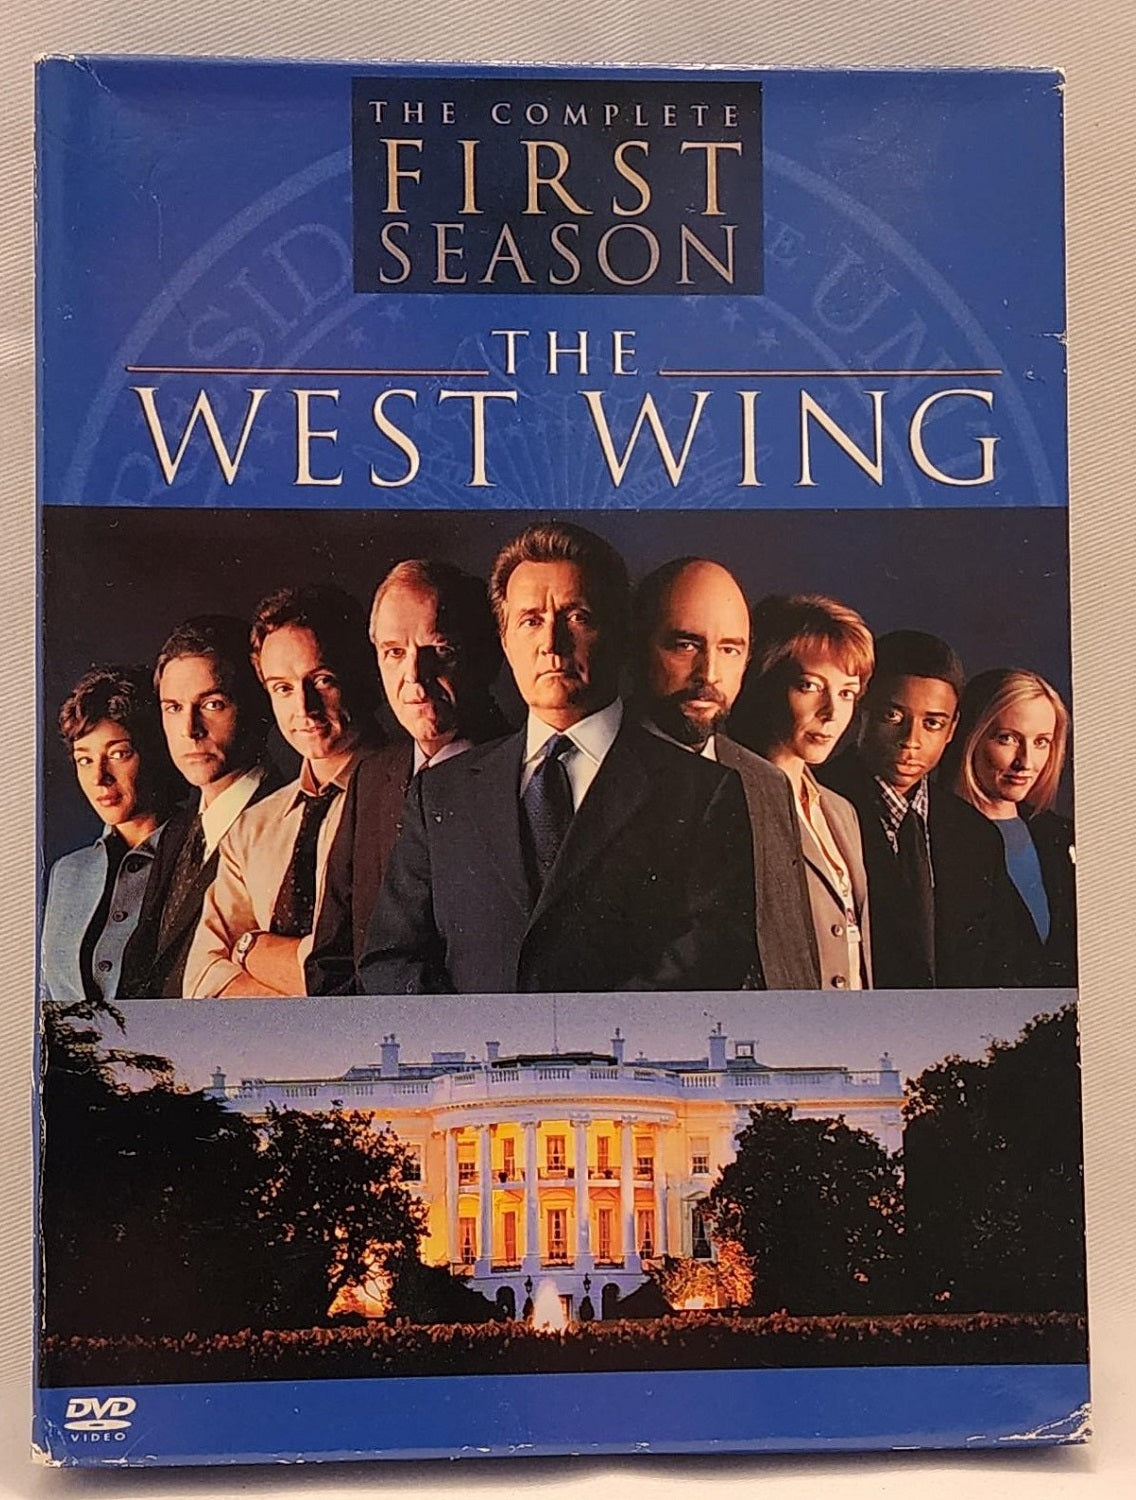 The West Wing - Série télévisée dramatique politique